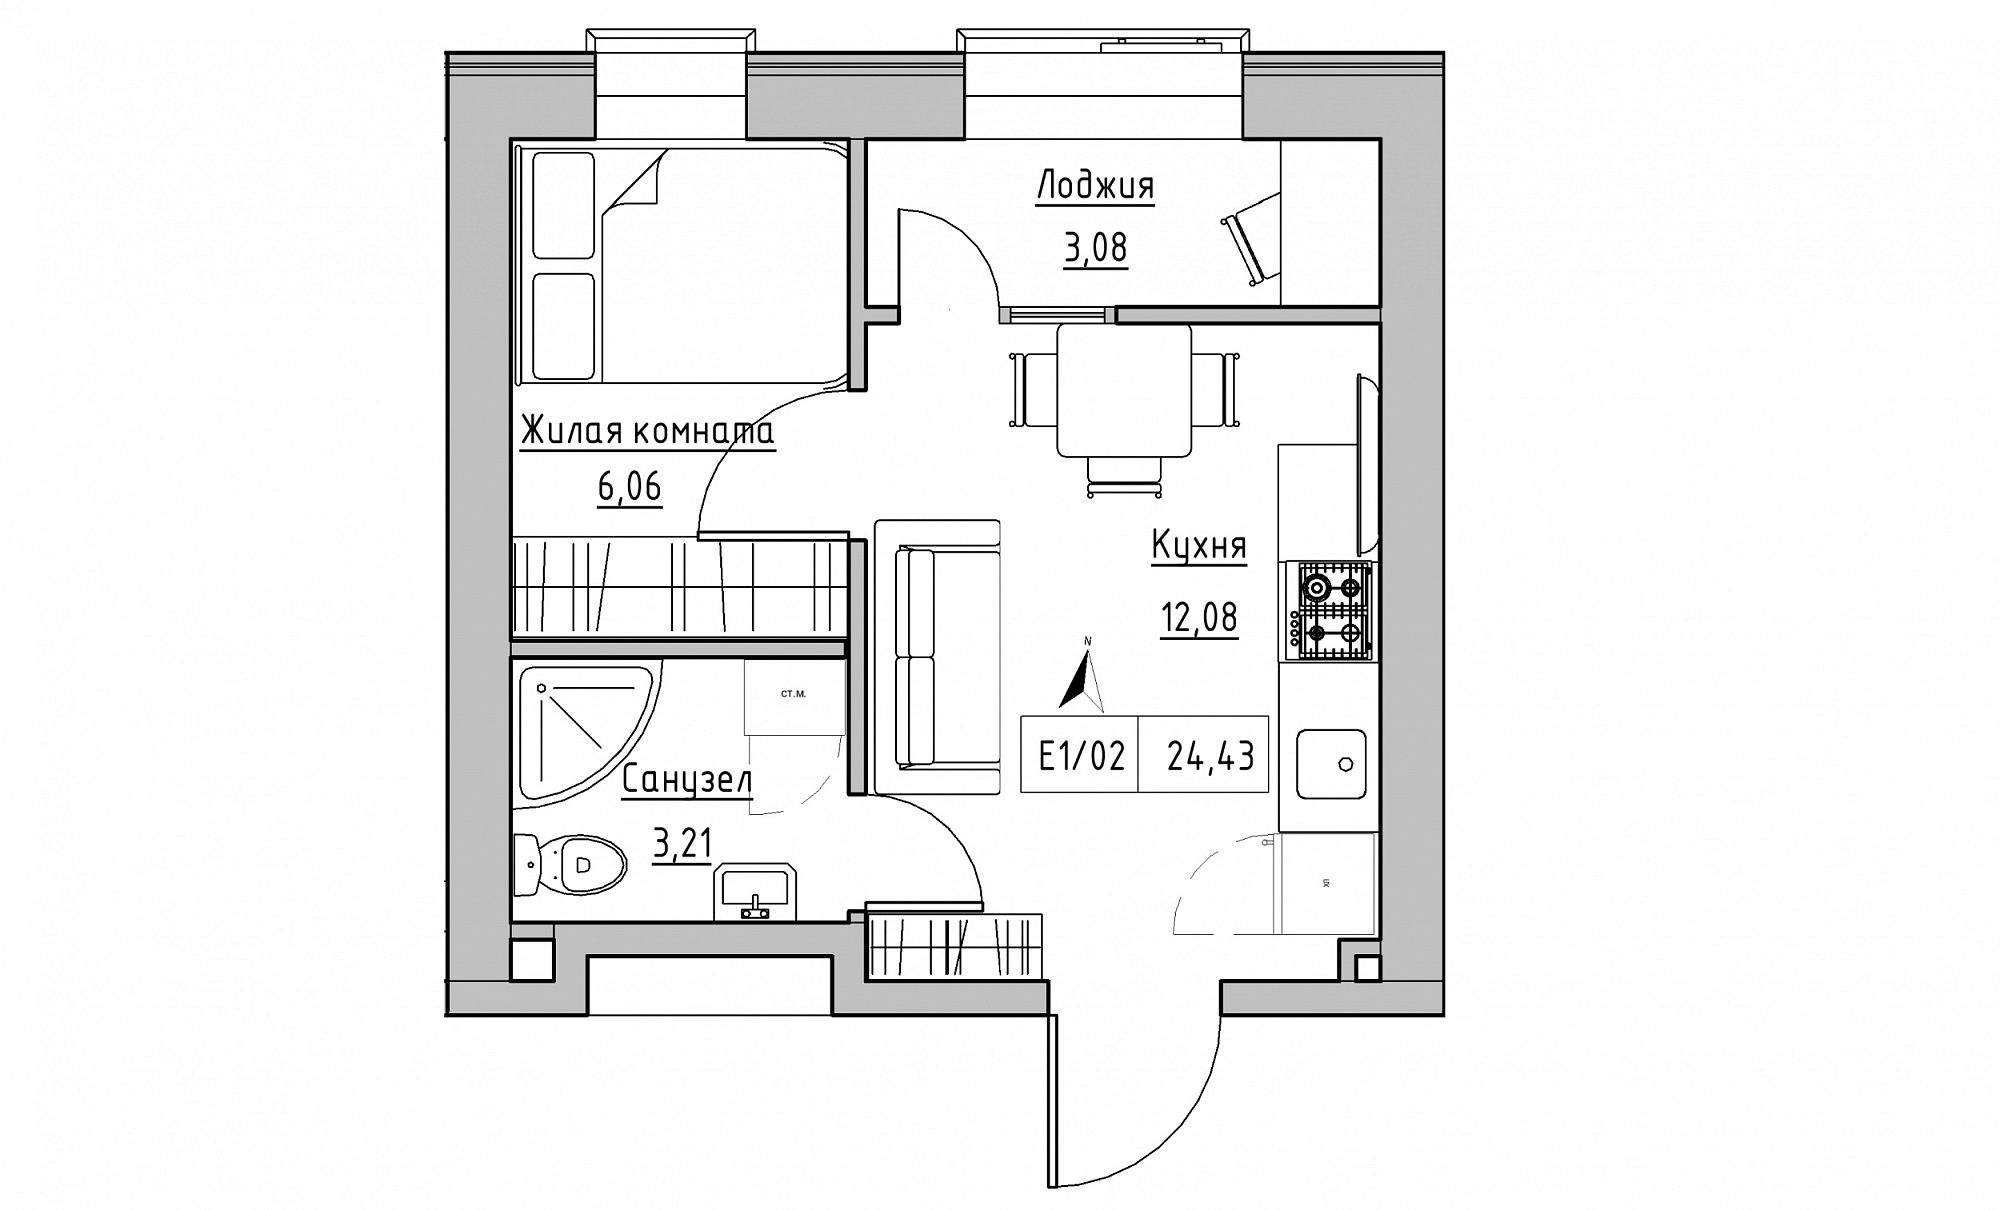 Планировка 1-к квартира площей 24.43м2, KS-015-05/0017.